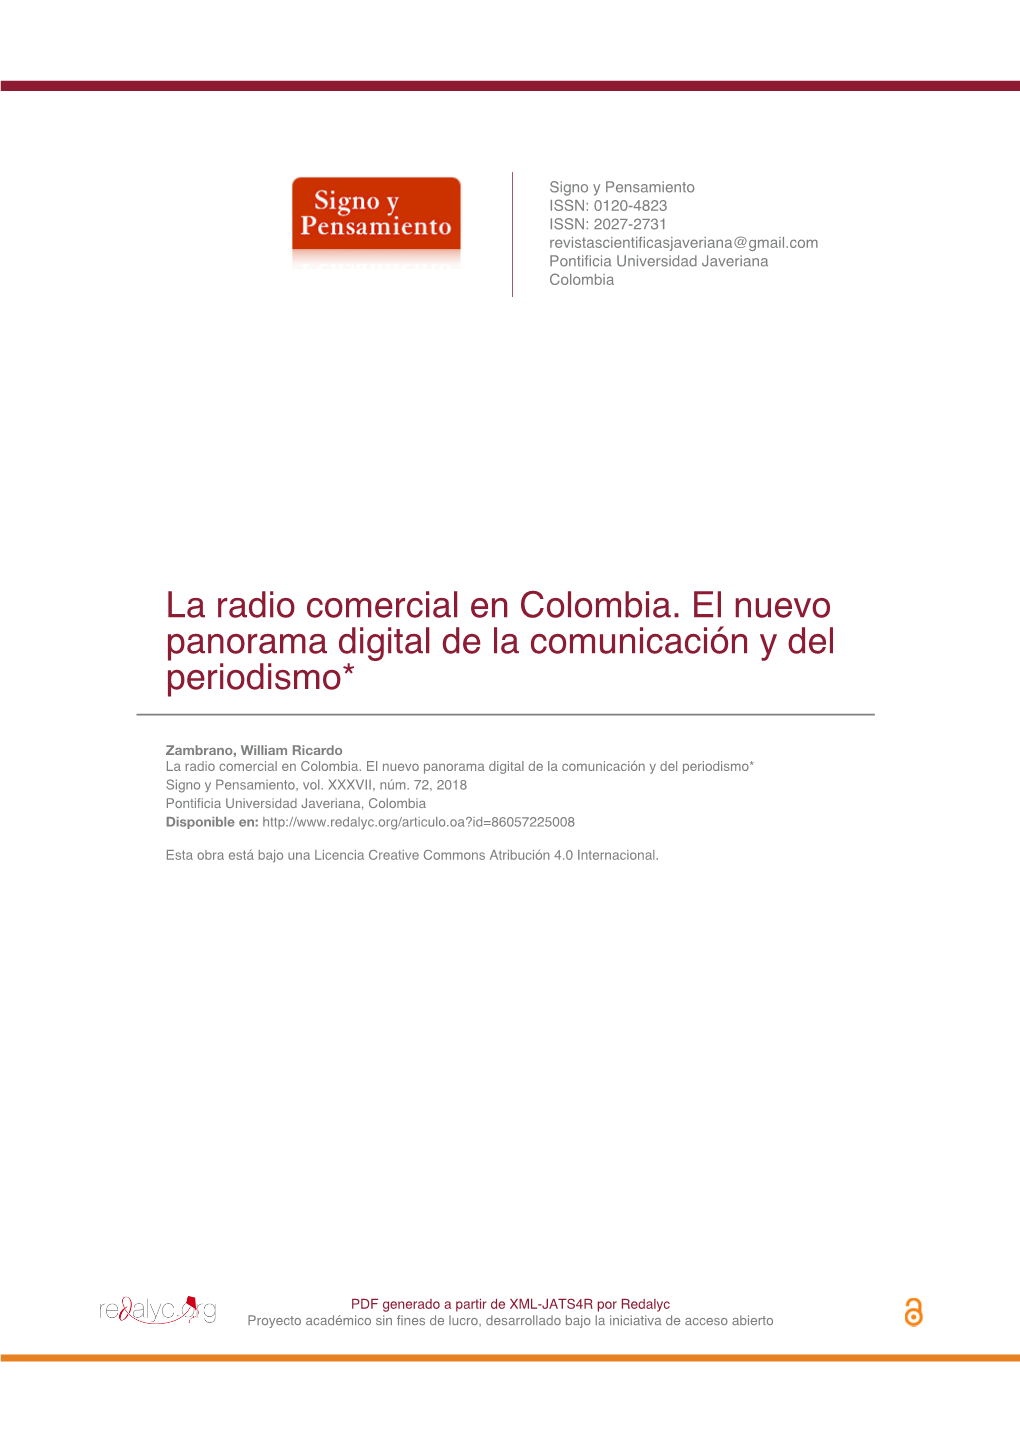 La Radio Comercial En Colombia. El Nuevo Panorama Digital De La Comunicación Y Del Periodismo*